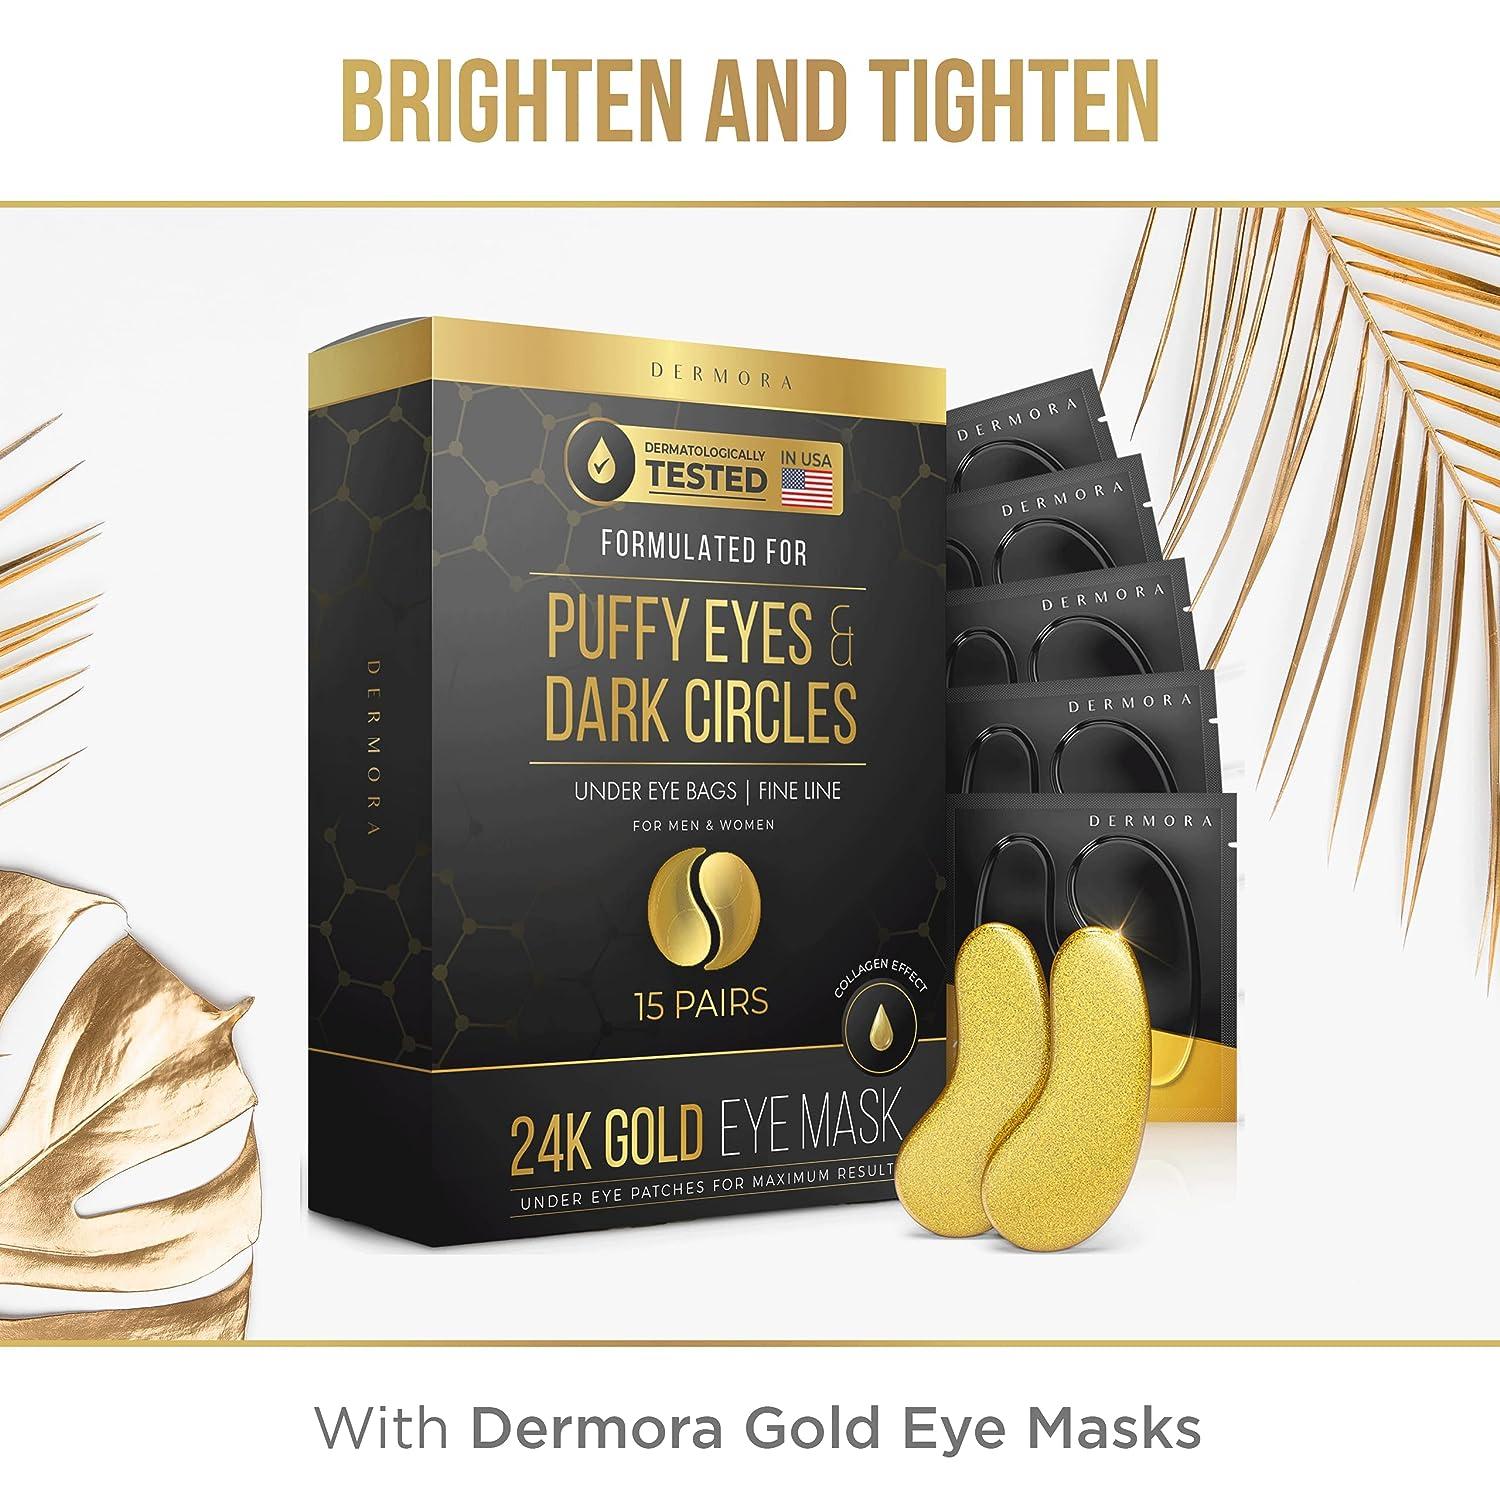 revitalizing and detoxifying mask with 24k gold flakes – HERLA